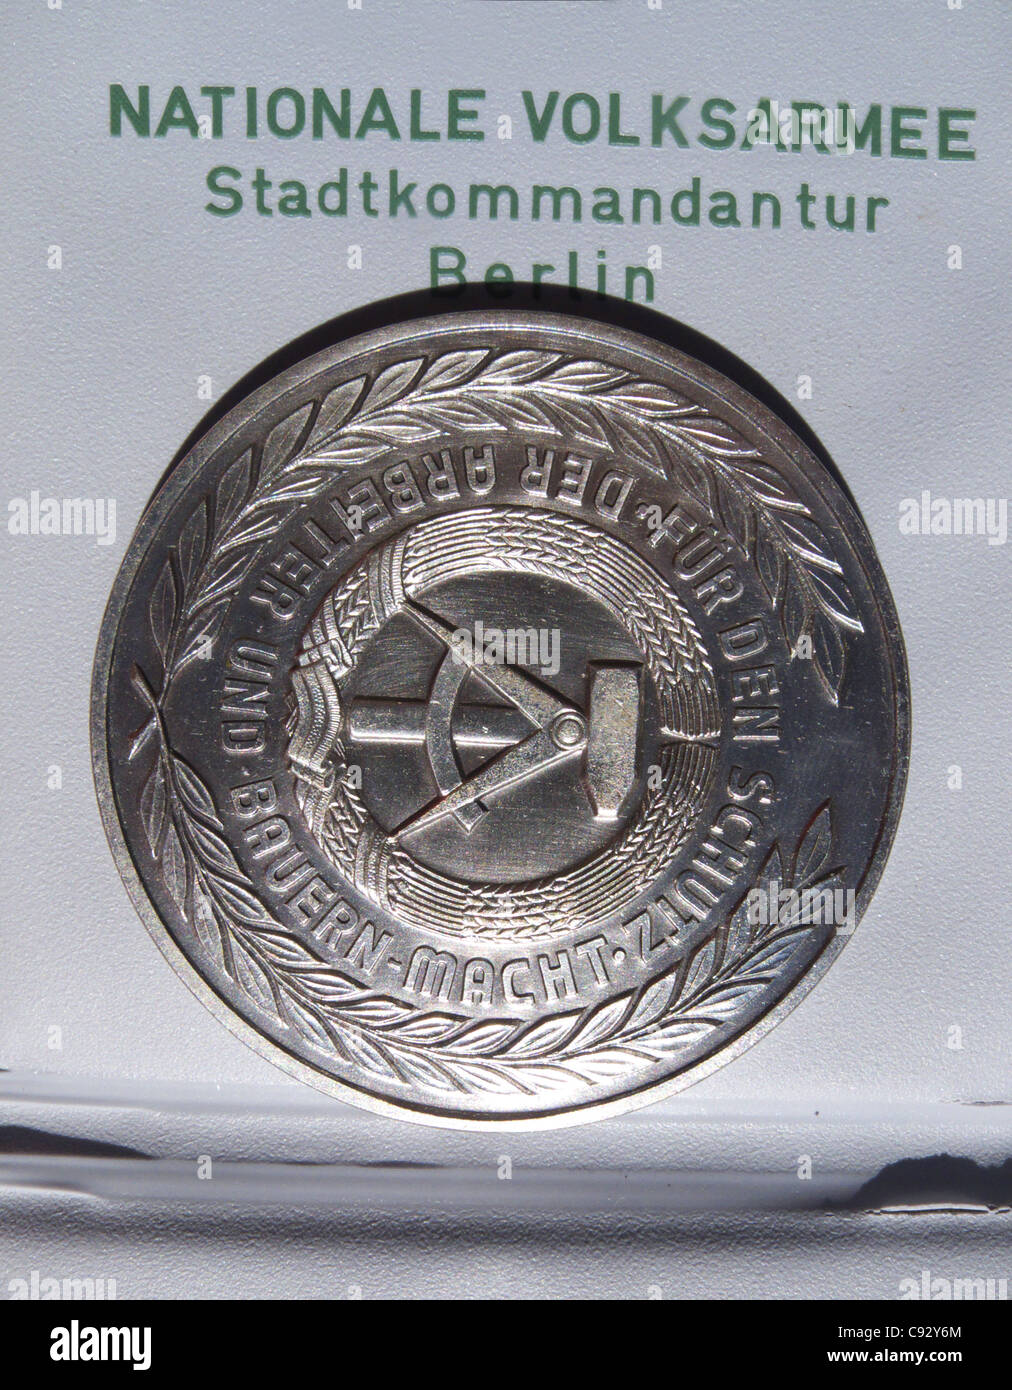 Un médaillon de l'Allemagne de l'est donnée aux travailleurs de la construction qui a aidé à mettre en place le Mur de Berlin la nuit sur le 13 août 1961 Banque D'Images